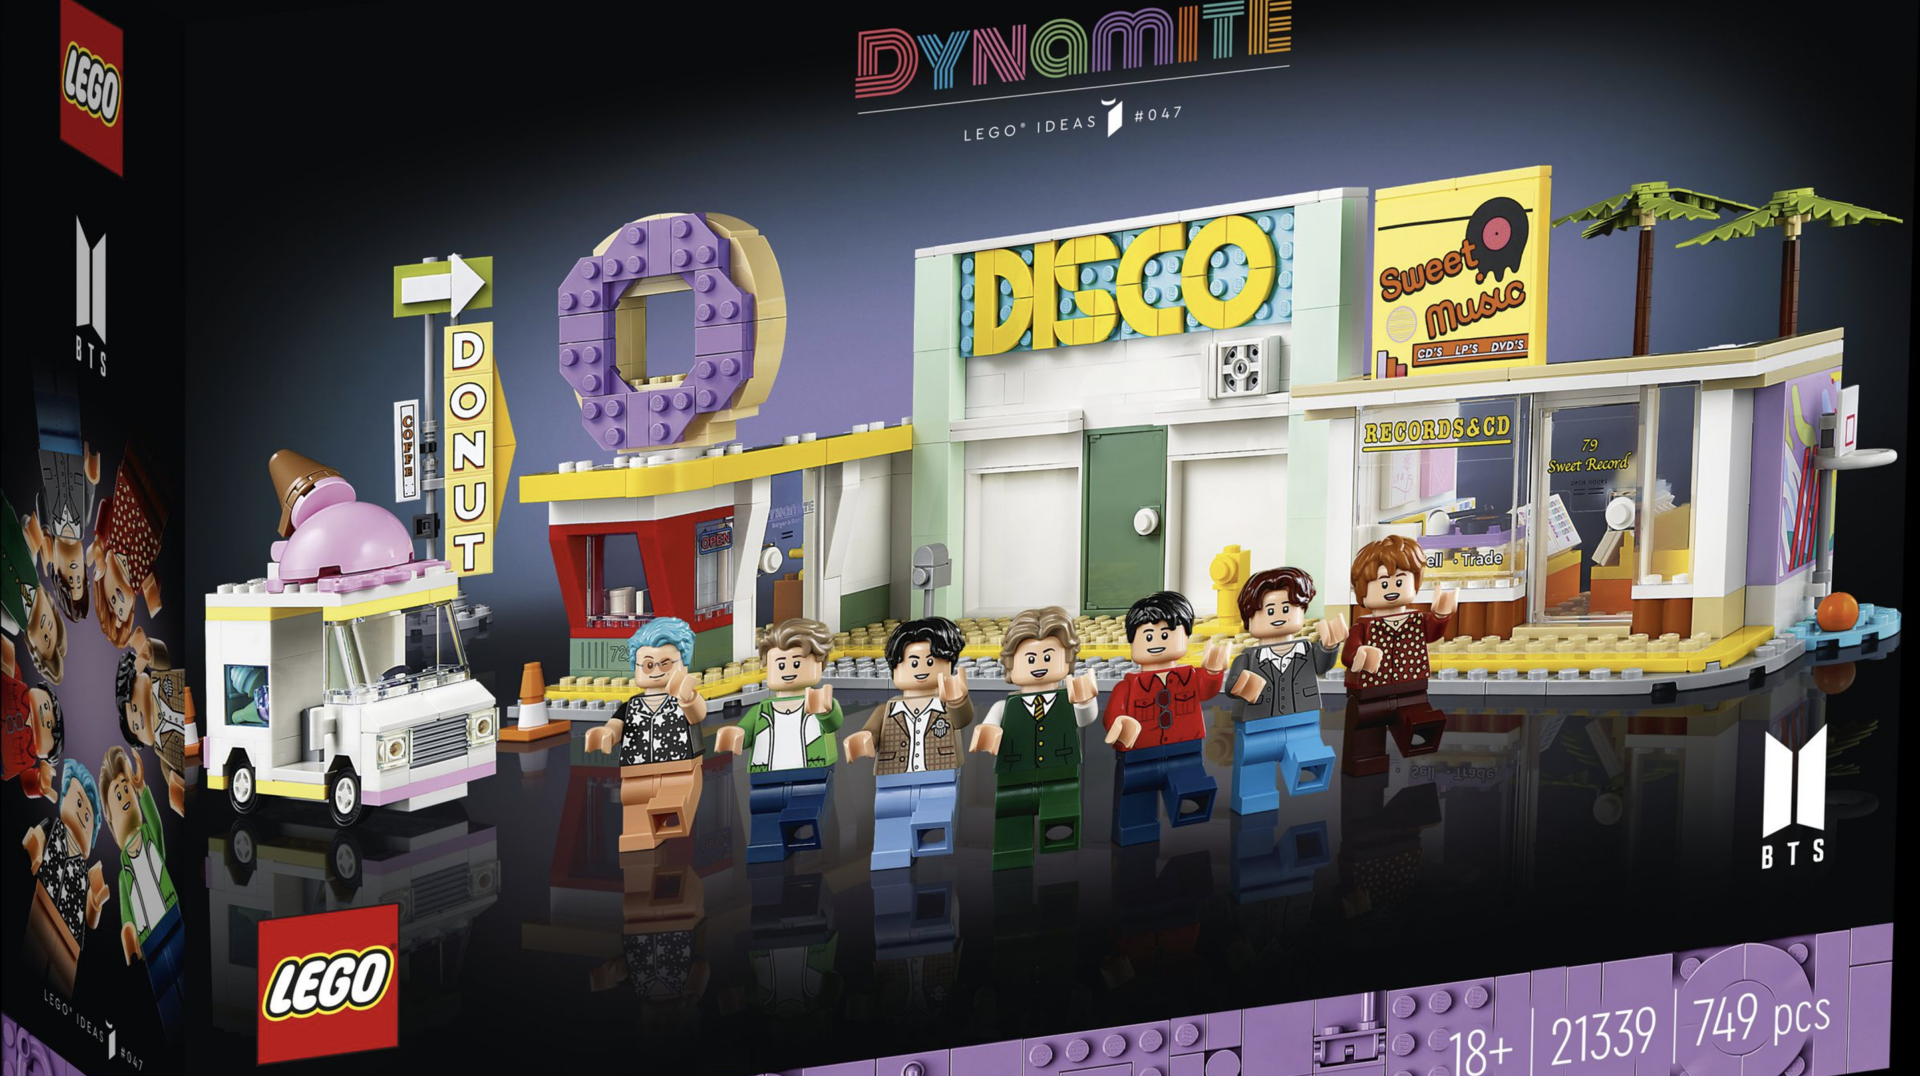 LEGO เปิดตัวชุดตัวต่อสุดว้าวที่ถอดแบบจากมิวสิกวิดีโอ “Dynamite” ของ BTS